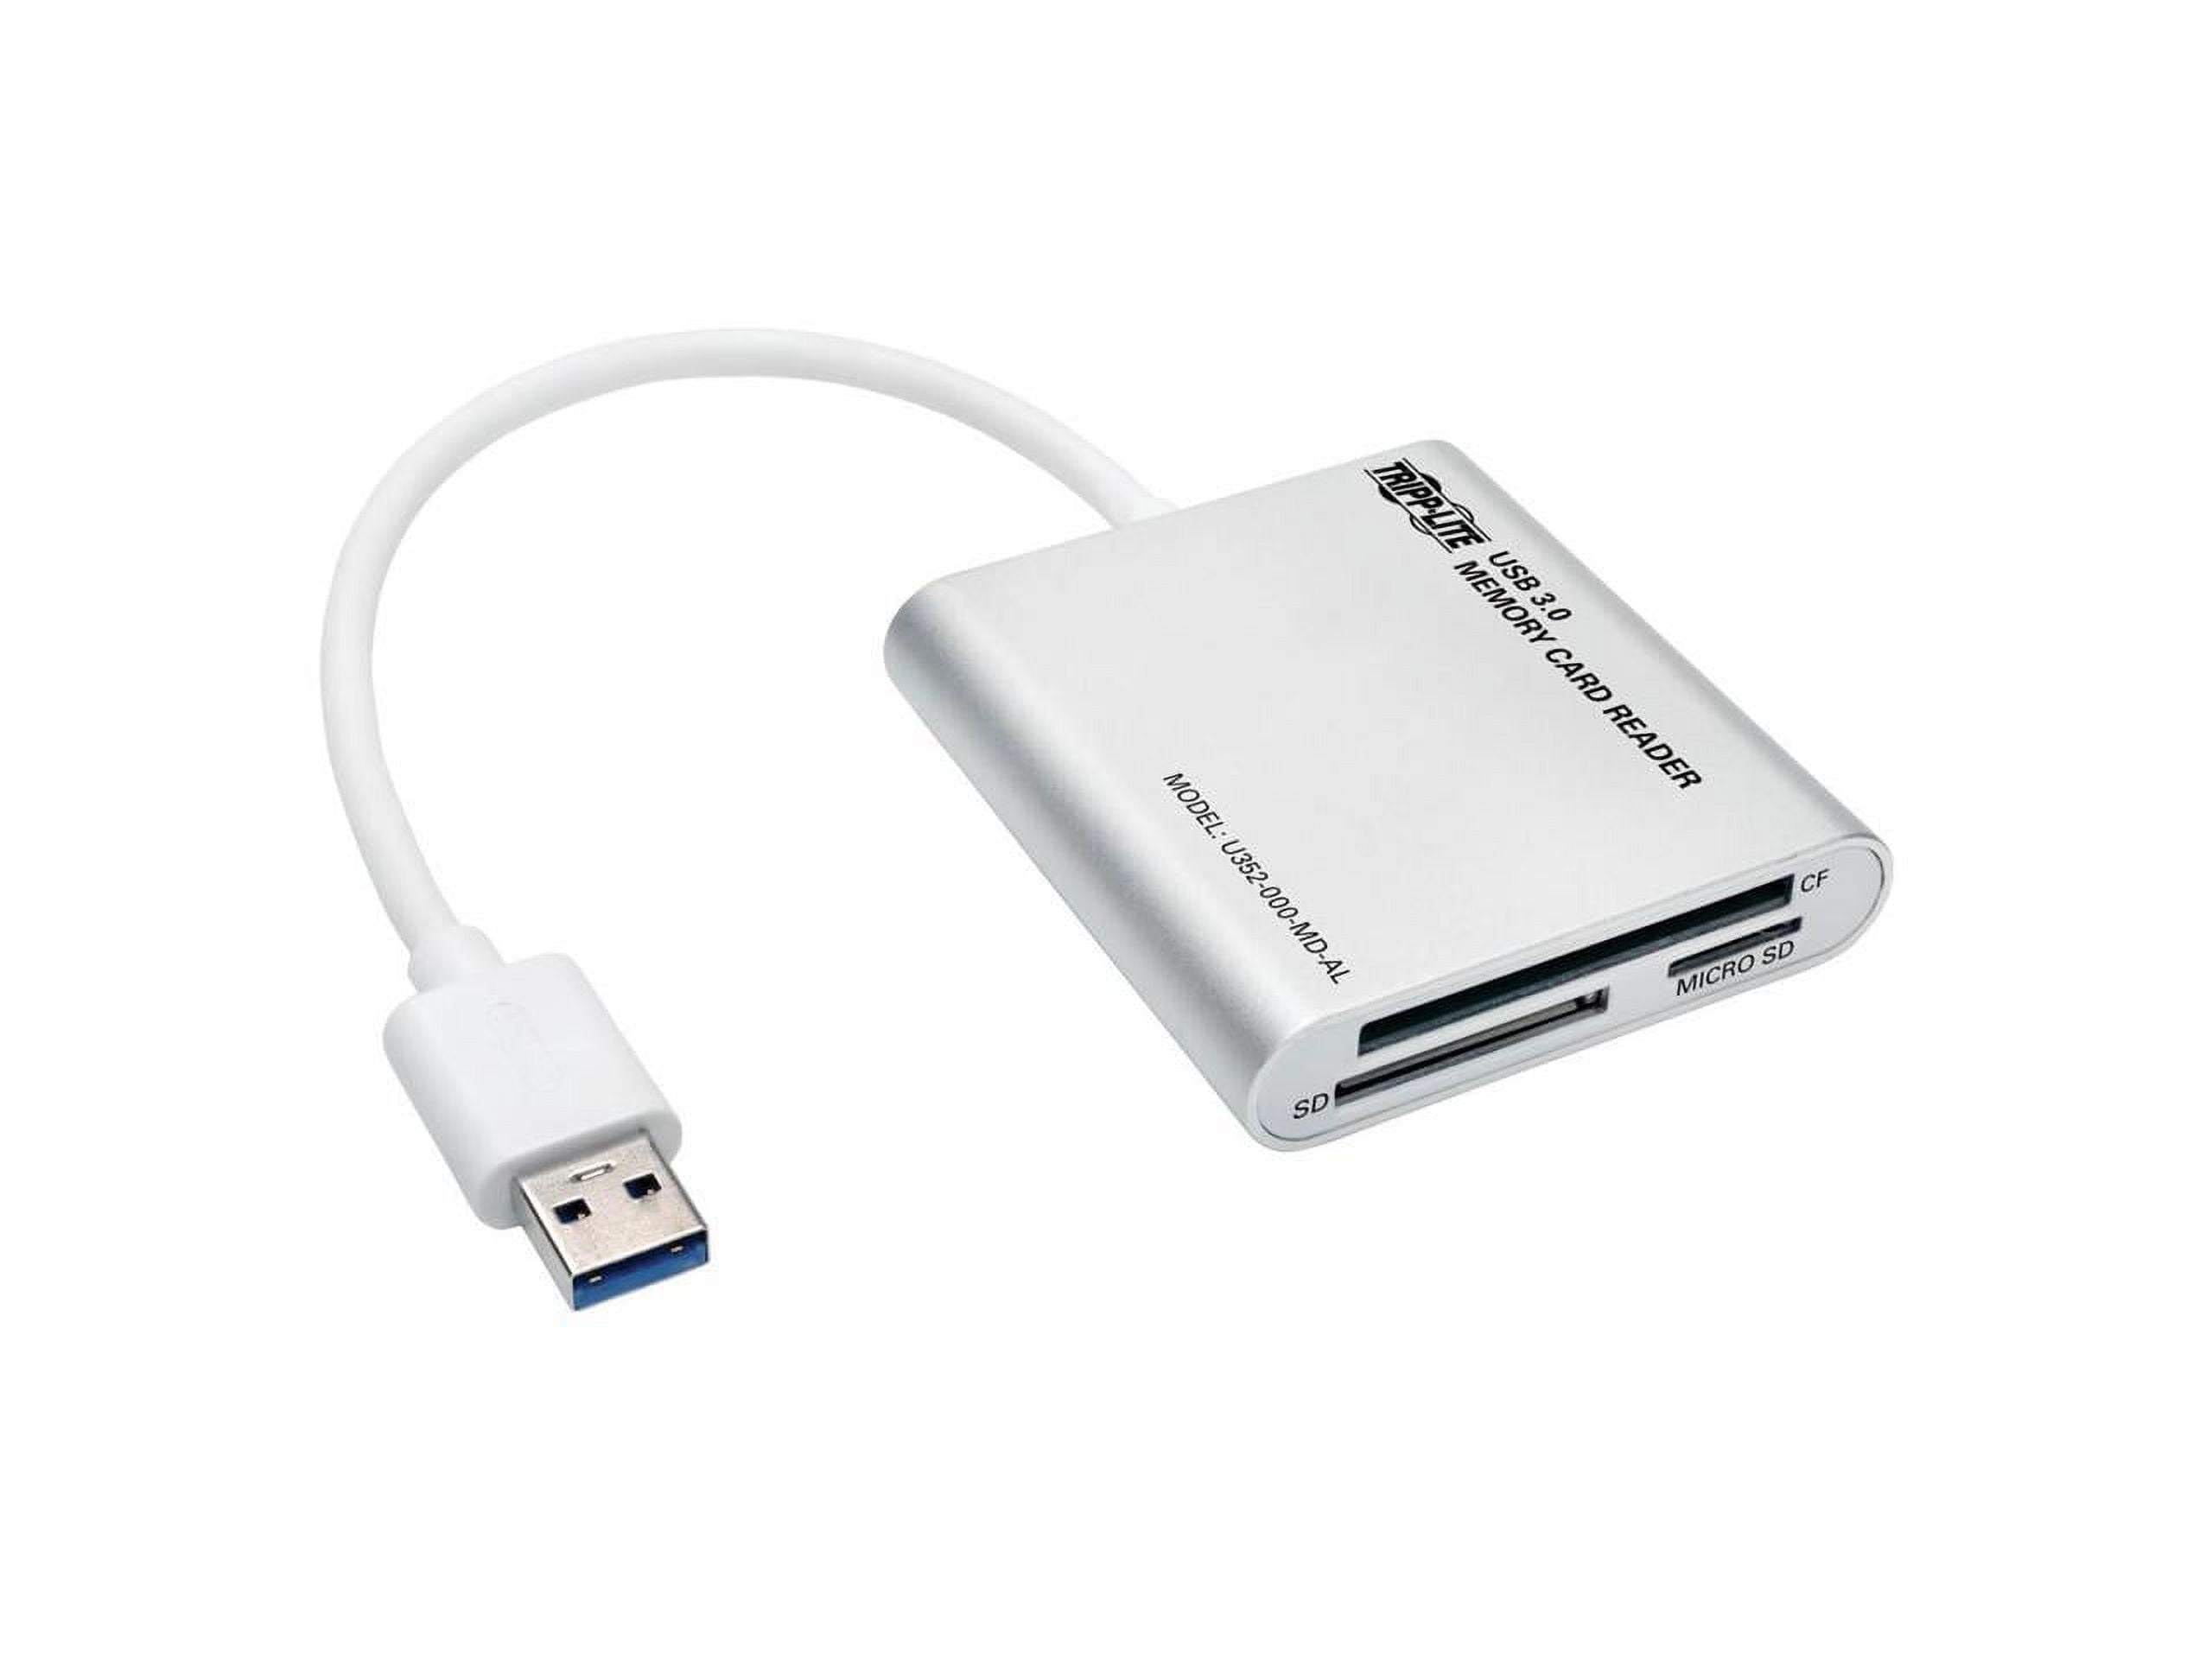 Picture of Tripp Lite U352-000-MD-AL USB 3.0 Super Speed Multi-Drive Memory Card Reader & Writer, Aluminum